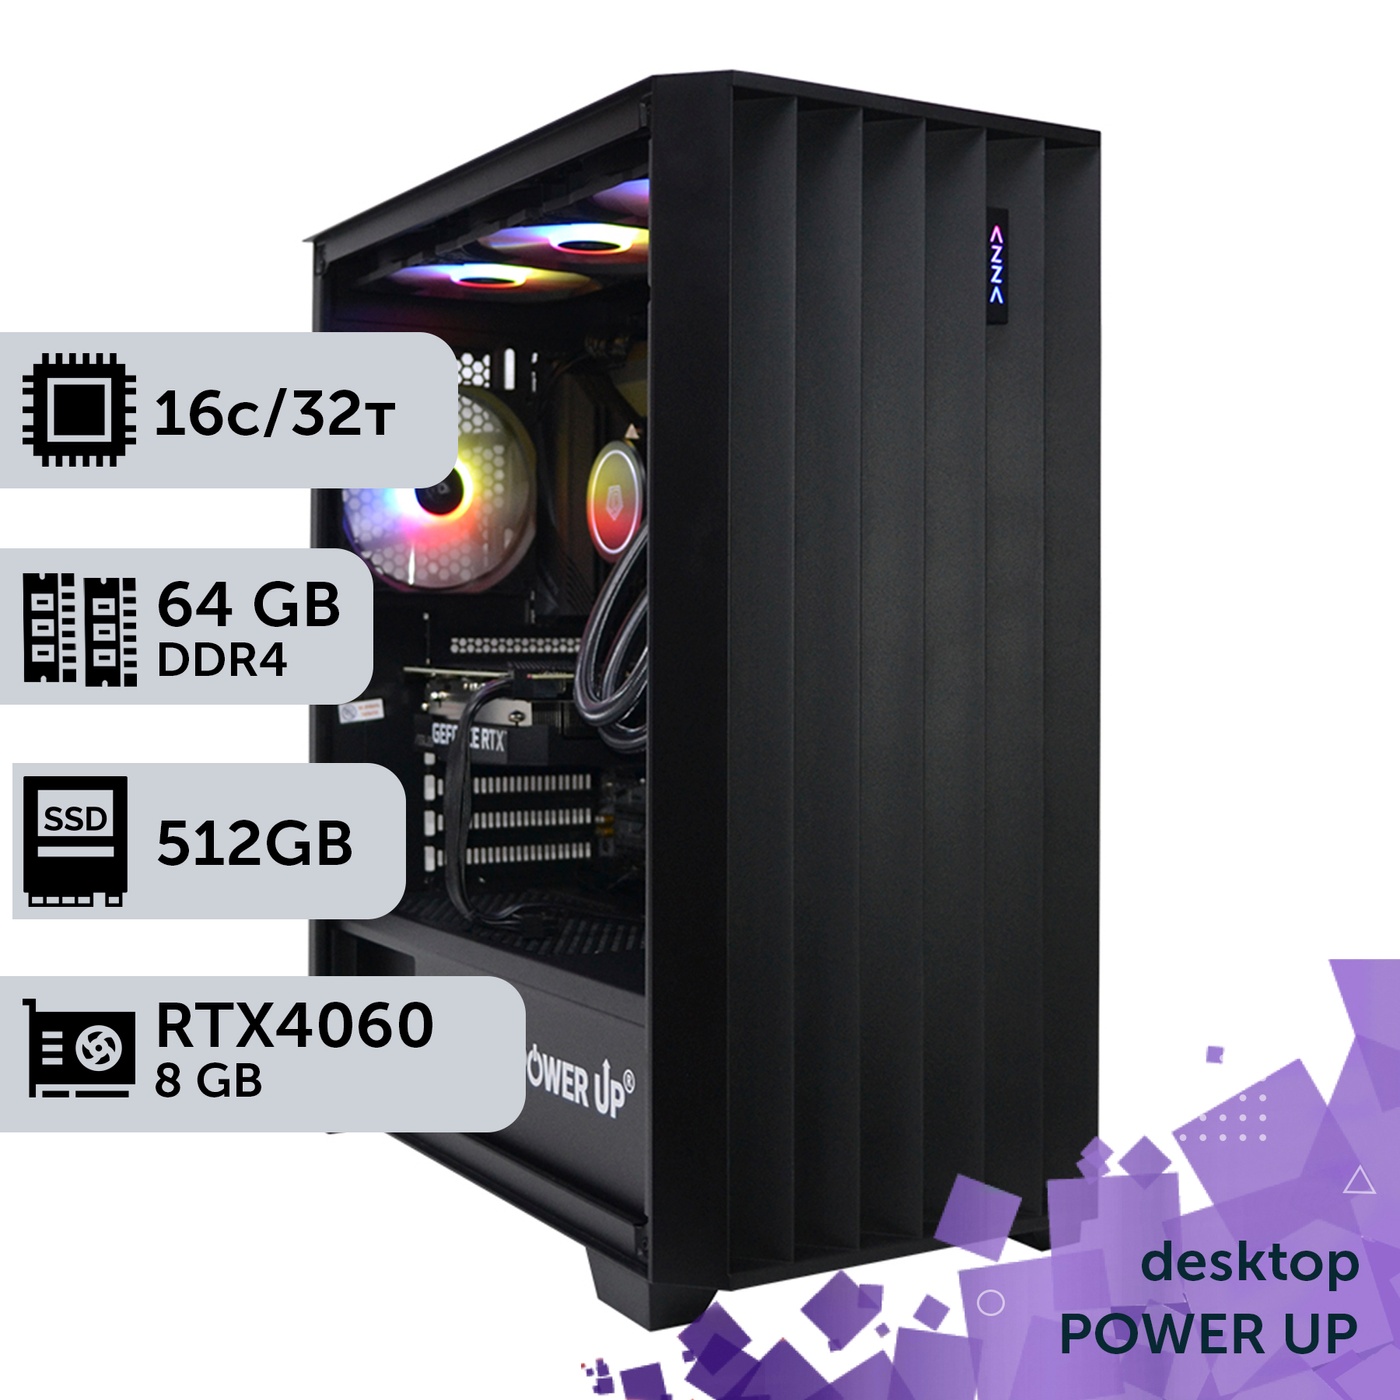 Робоча станція PowerUp Desktop #262 Ryzen 9 5950x/64 GB/HDD 1 TB/SSD 512GB/GeForce RTX 4060 8GB